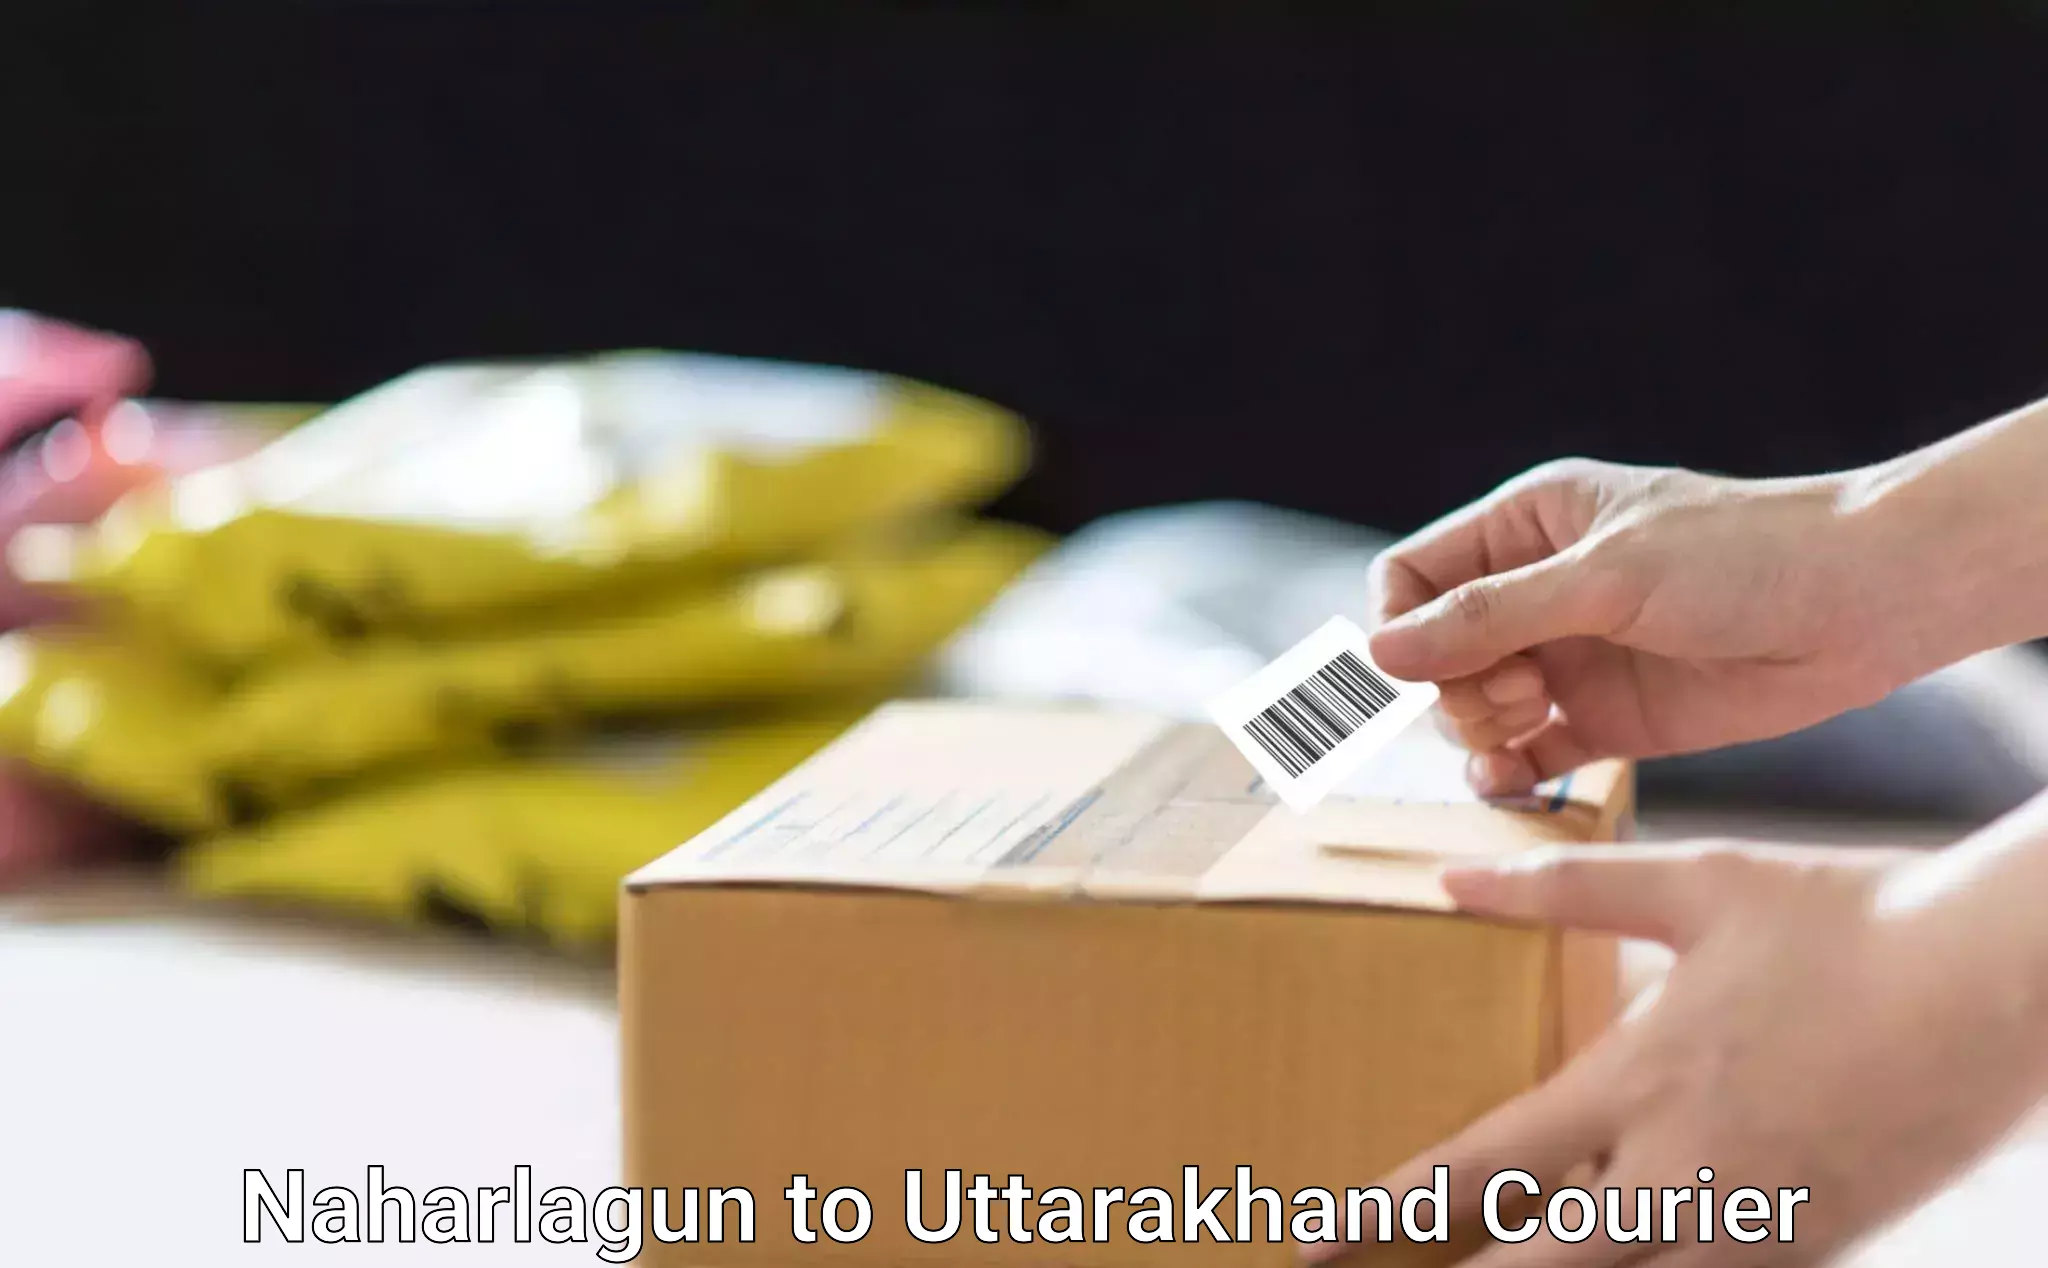 Logistics service provider Naharlagun to Uttarakhand